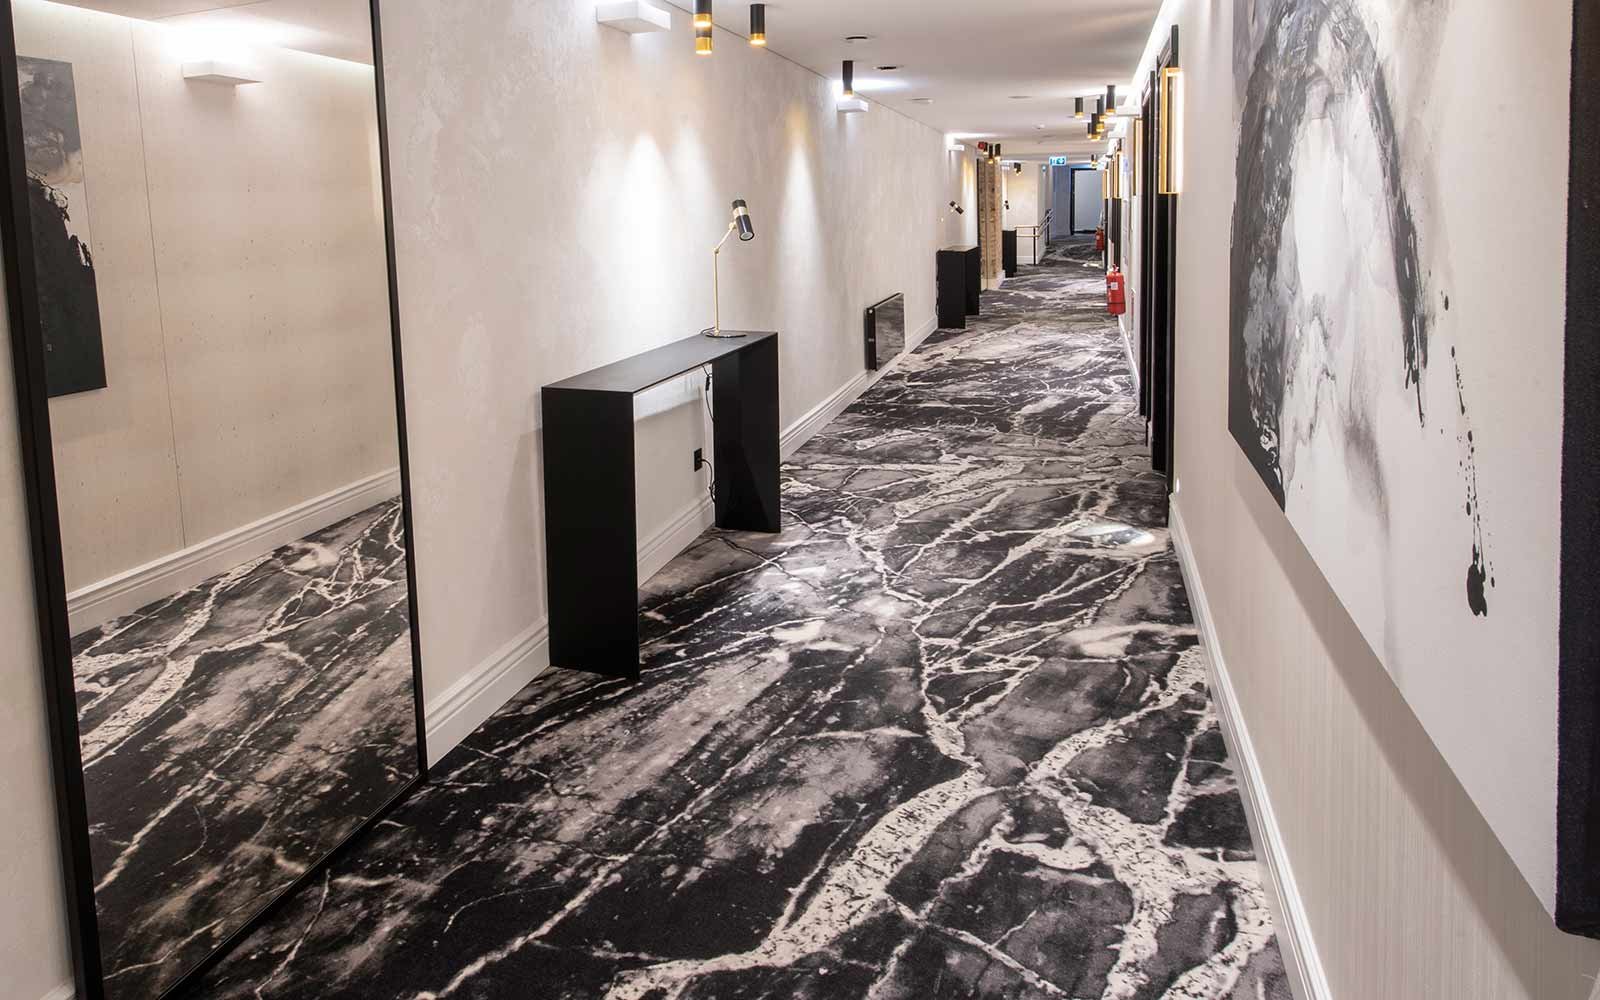 Hotel Teppichboden: Hotelflur mit Teppichboden in Marmoroptik und goldenen Akzenten in der Dekoration so wie heller Wandgestaltung